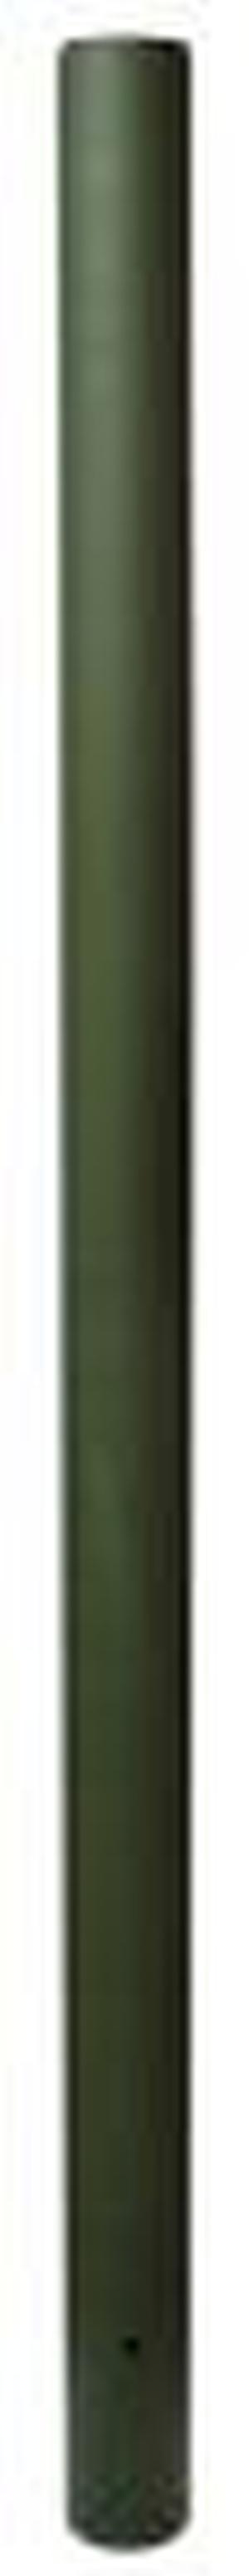 ФОТОГРАФИЯ Заборный столб пластиковый 1,5м с заглушкой диаметр 40мм 2шт/уп (Хаки)